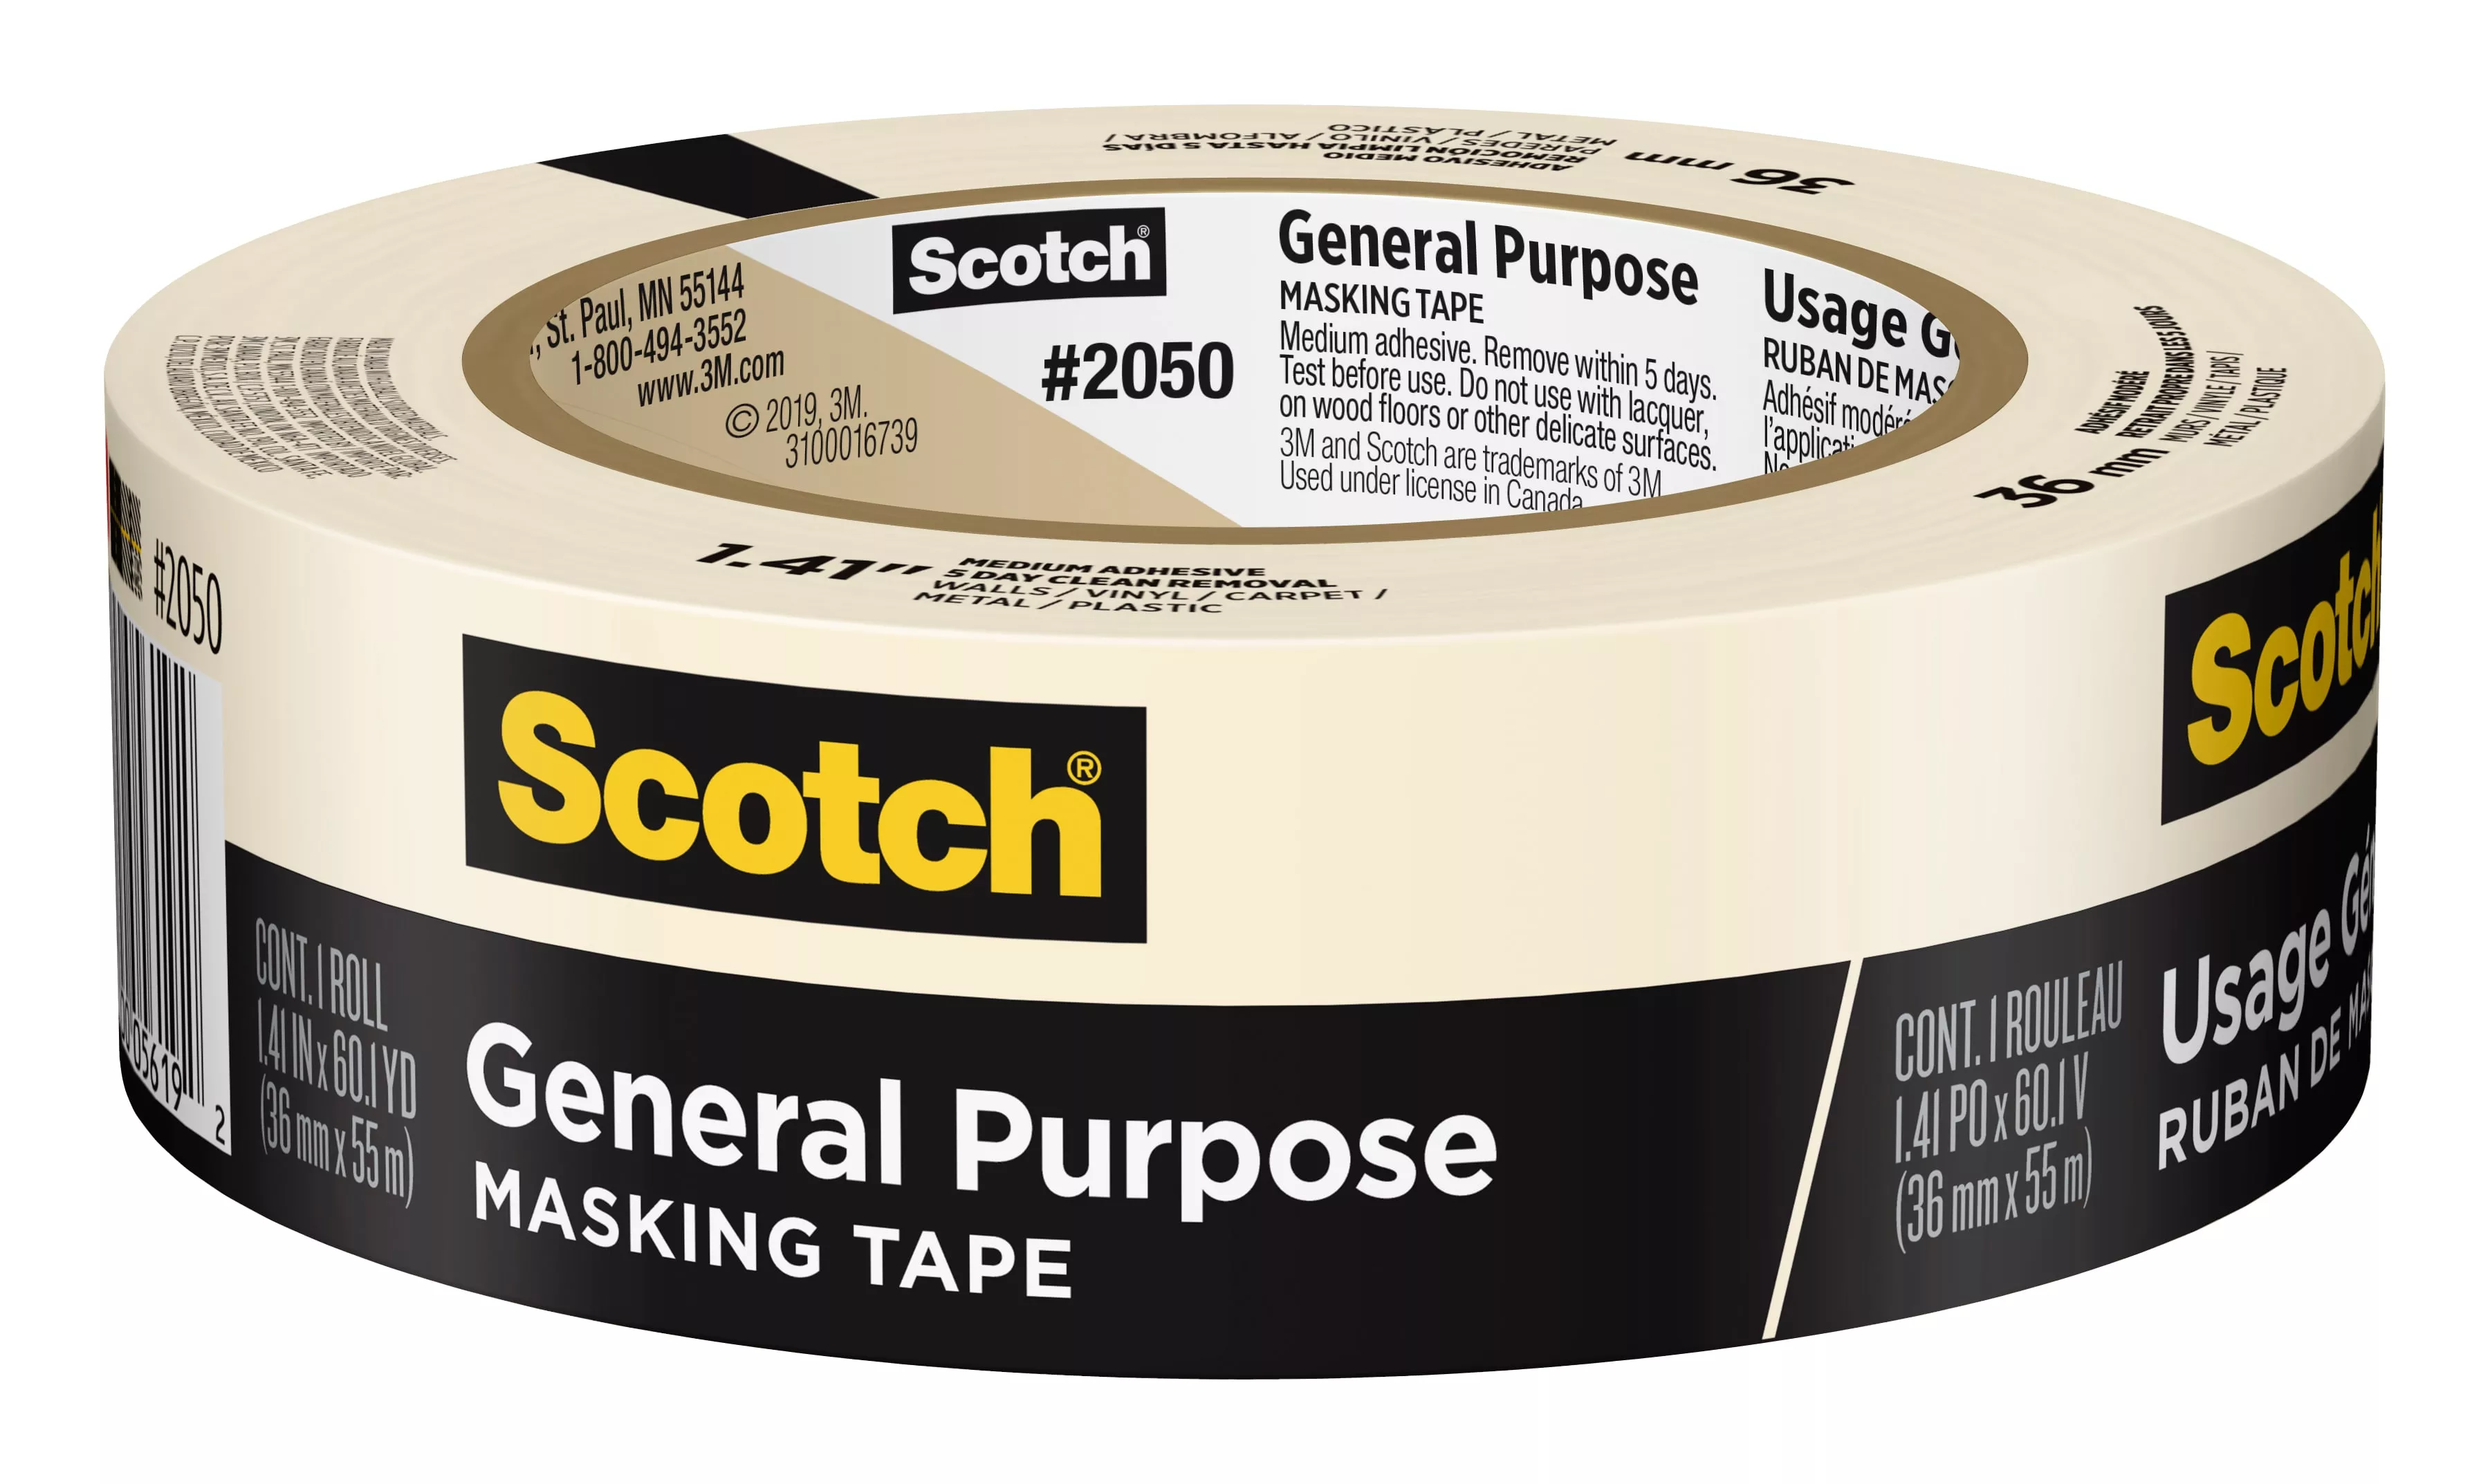 Scotch® General Purpose Masking Tape 2050-36AP, 1.41 in x 60.1 yd (36mm
x 55m)